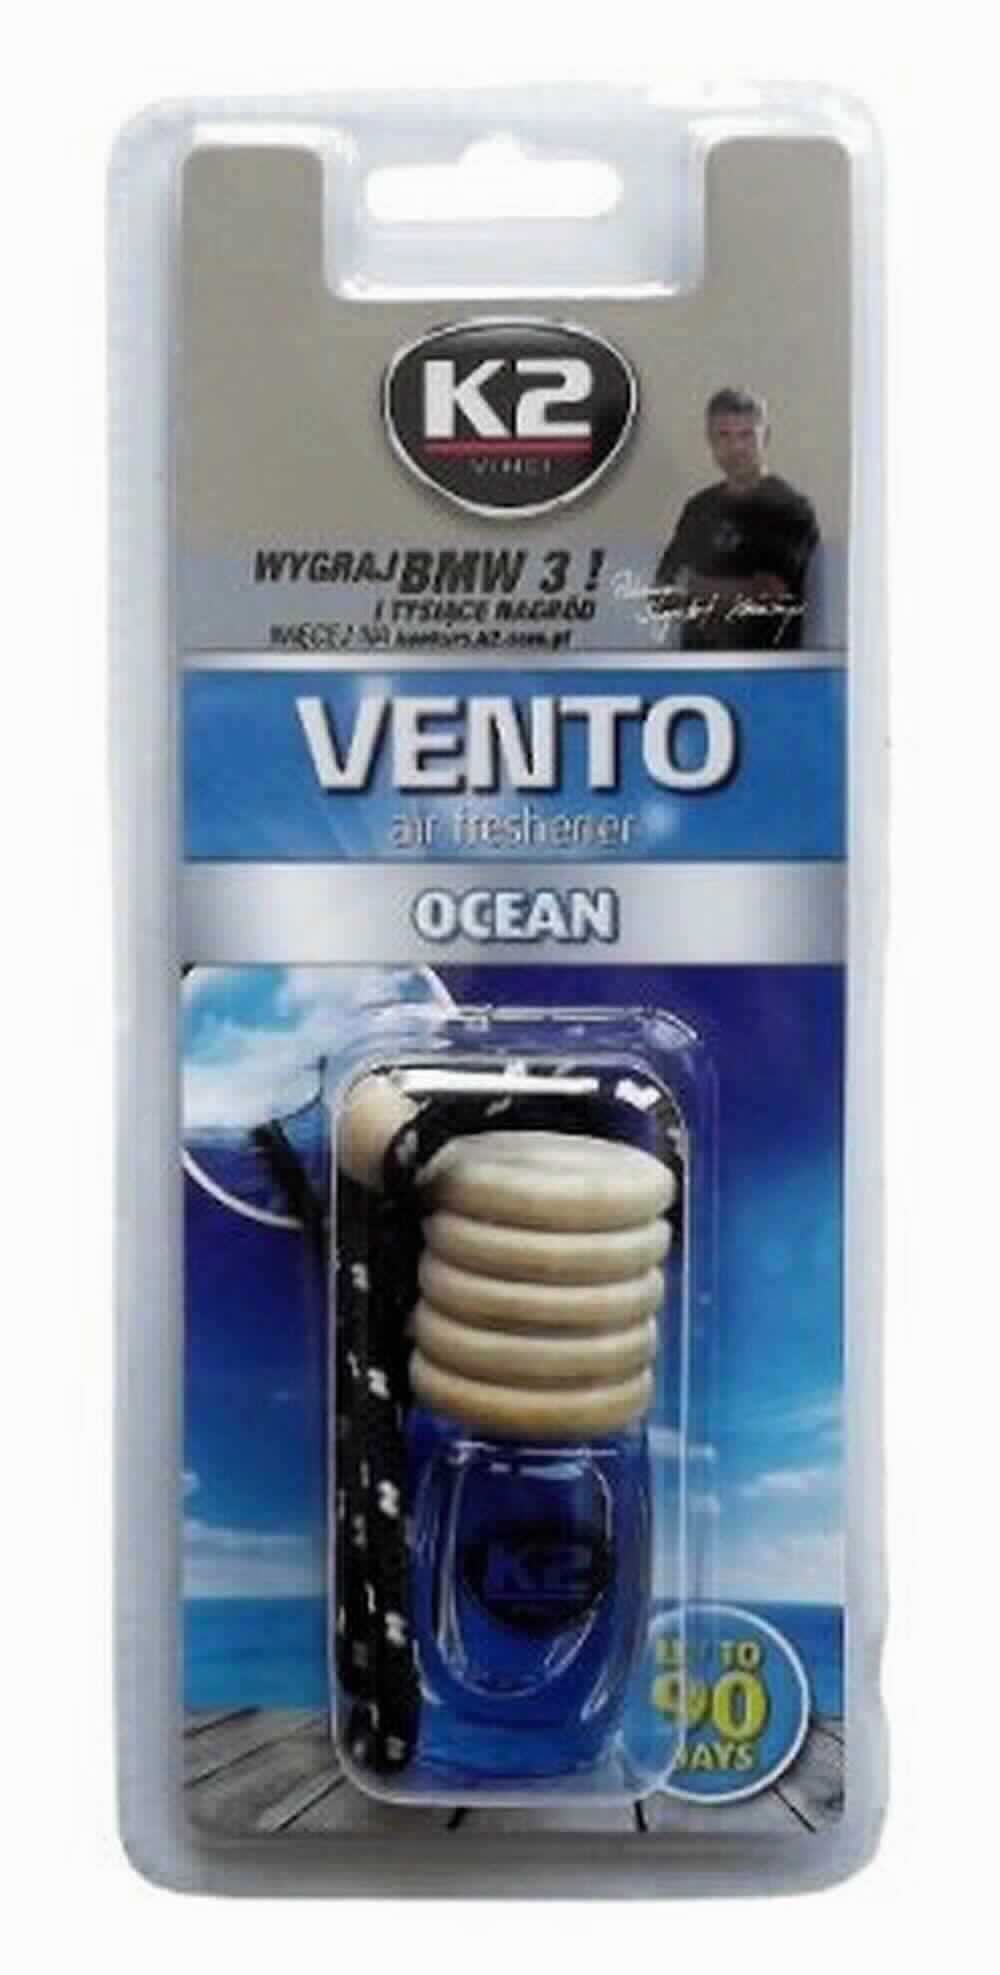 Vento Ocean 8ML K2 V454  Odświeżacz Powietrza W Butelce Vento Ocean 8ML K2 V454  K2